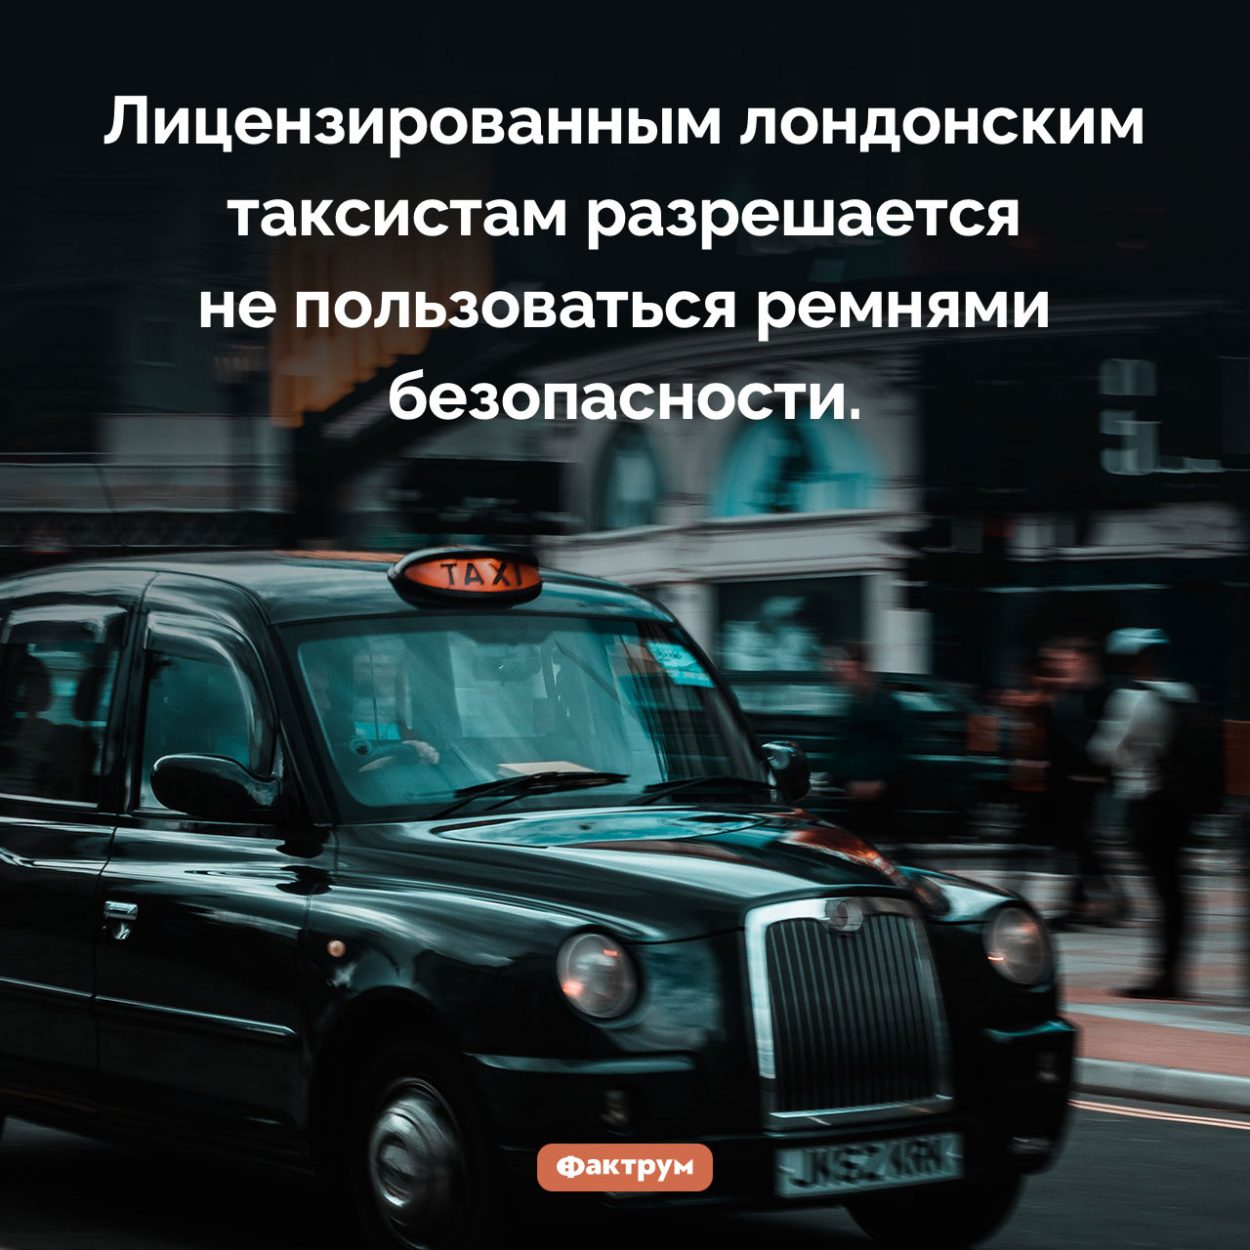 Кому можно не пристегиваться. Лицензированным лондонским таксистам разрешается не пользоваться ремнями безопасности.